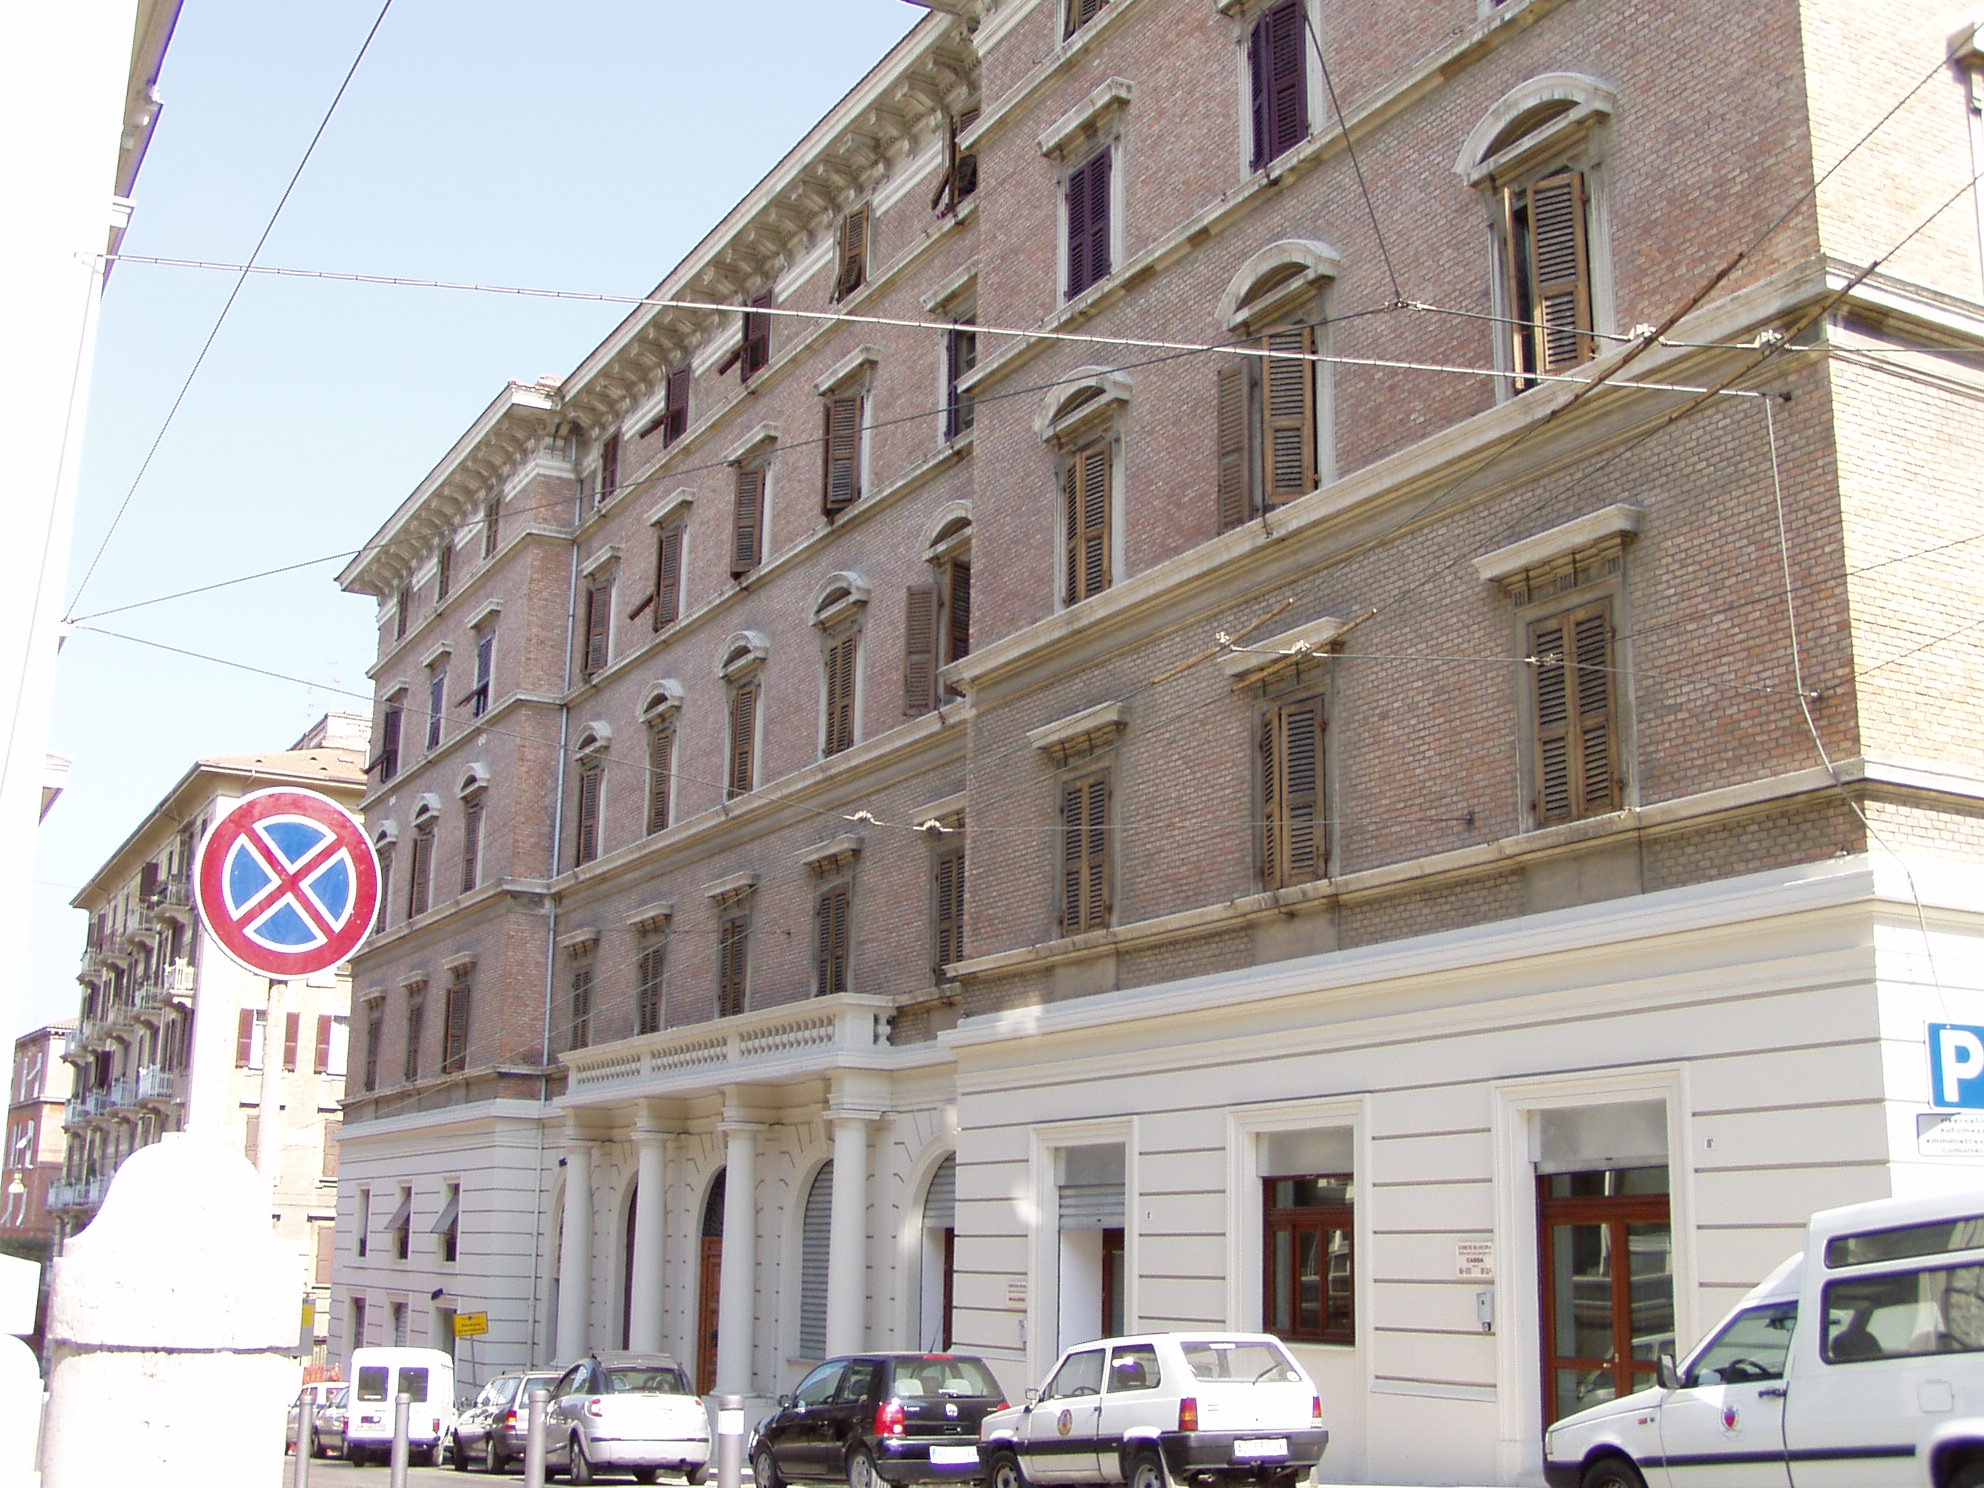 Palazzo in stile littorio (palazzo, di appartamenti) - Ancona (AN) 